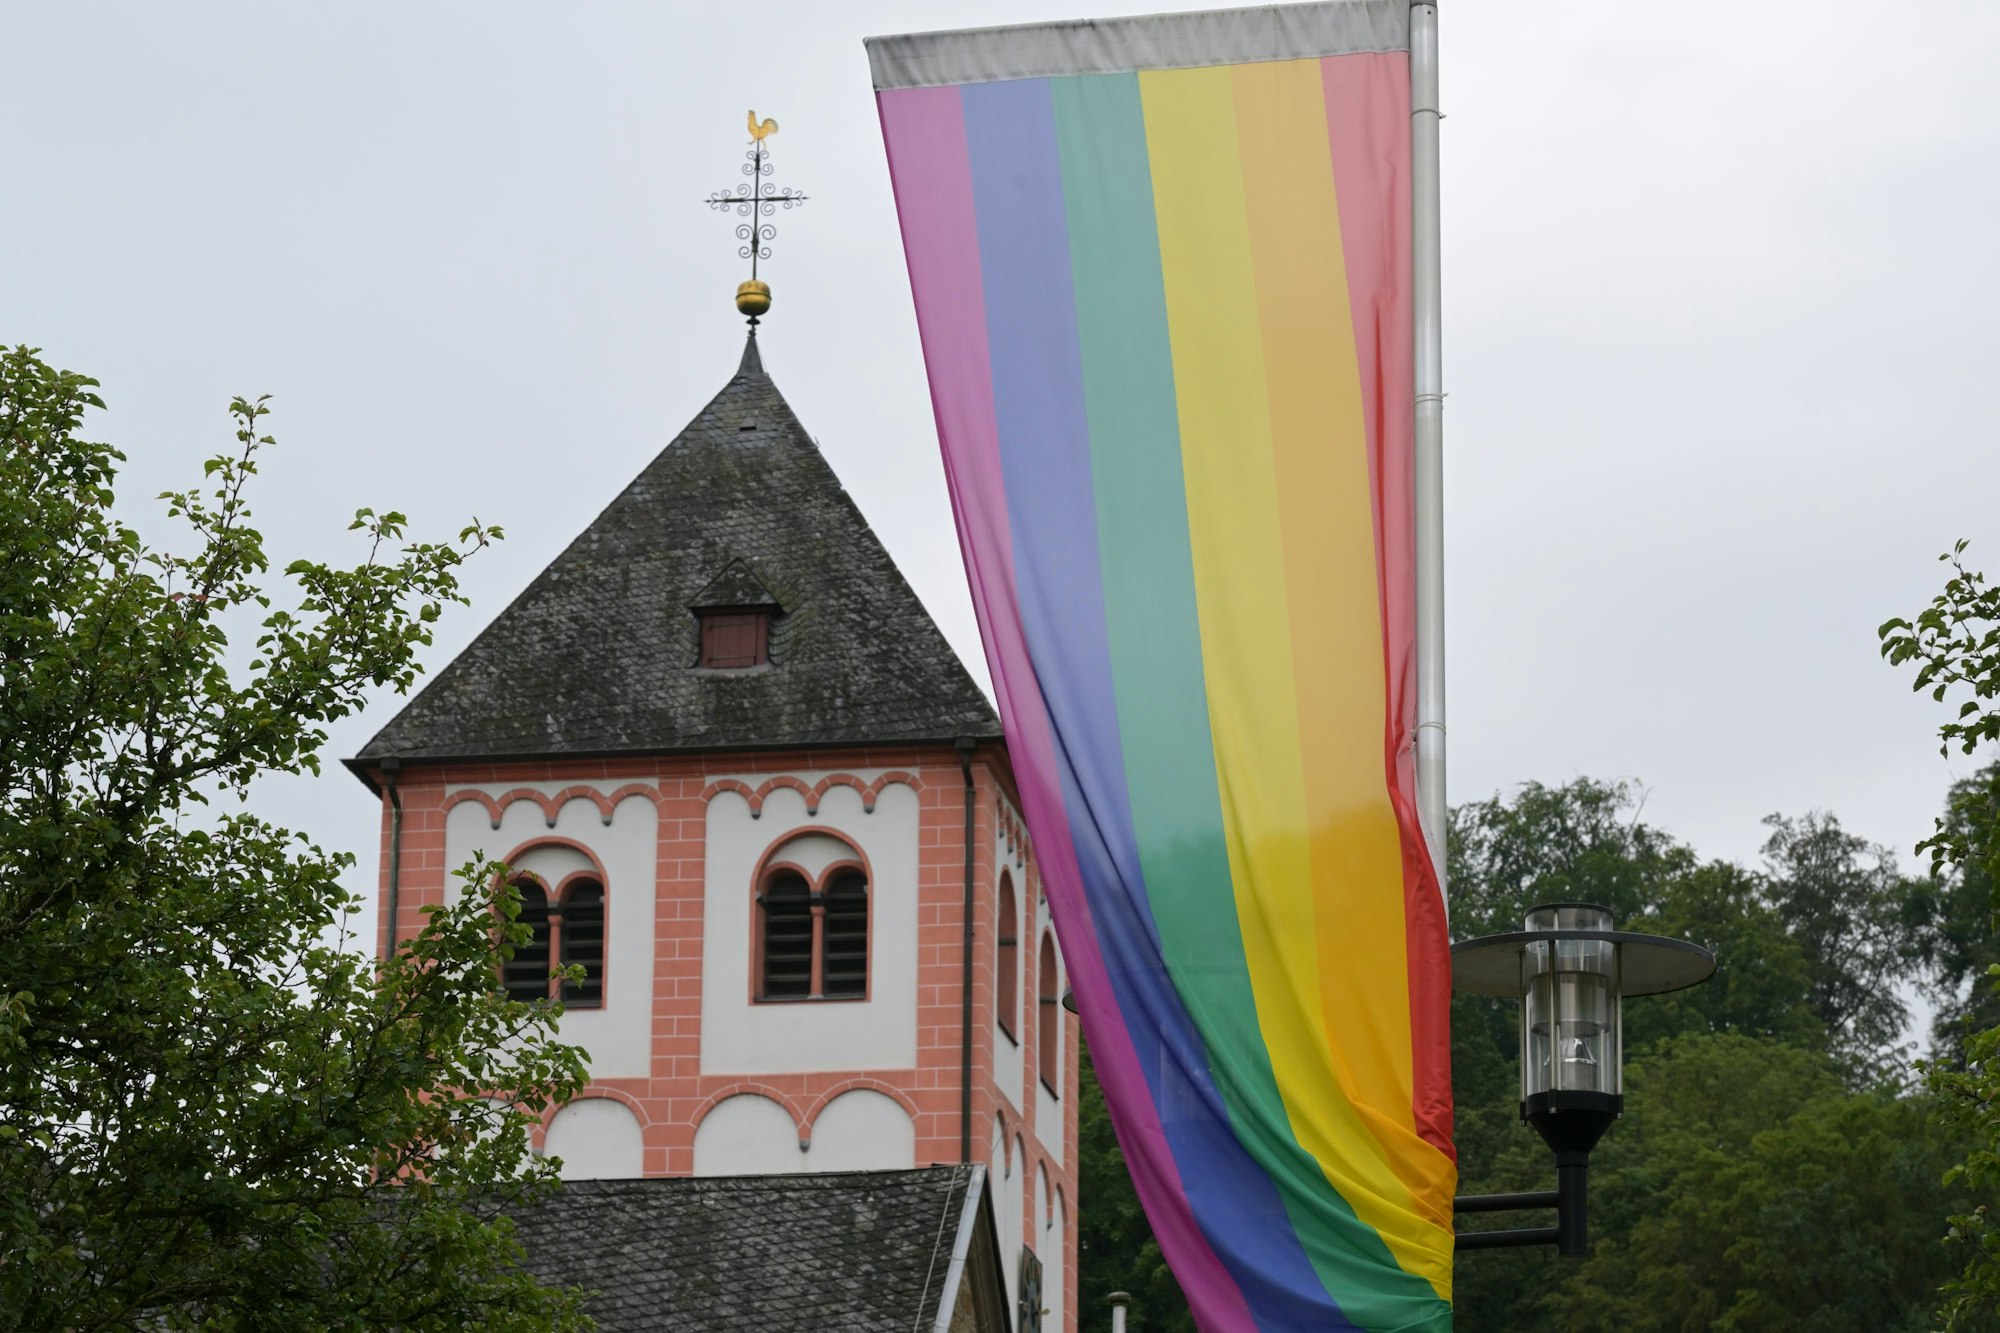 Regenbogenflagge vor einem Kirchturm in Odenthal.